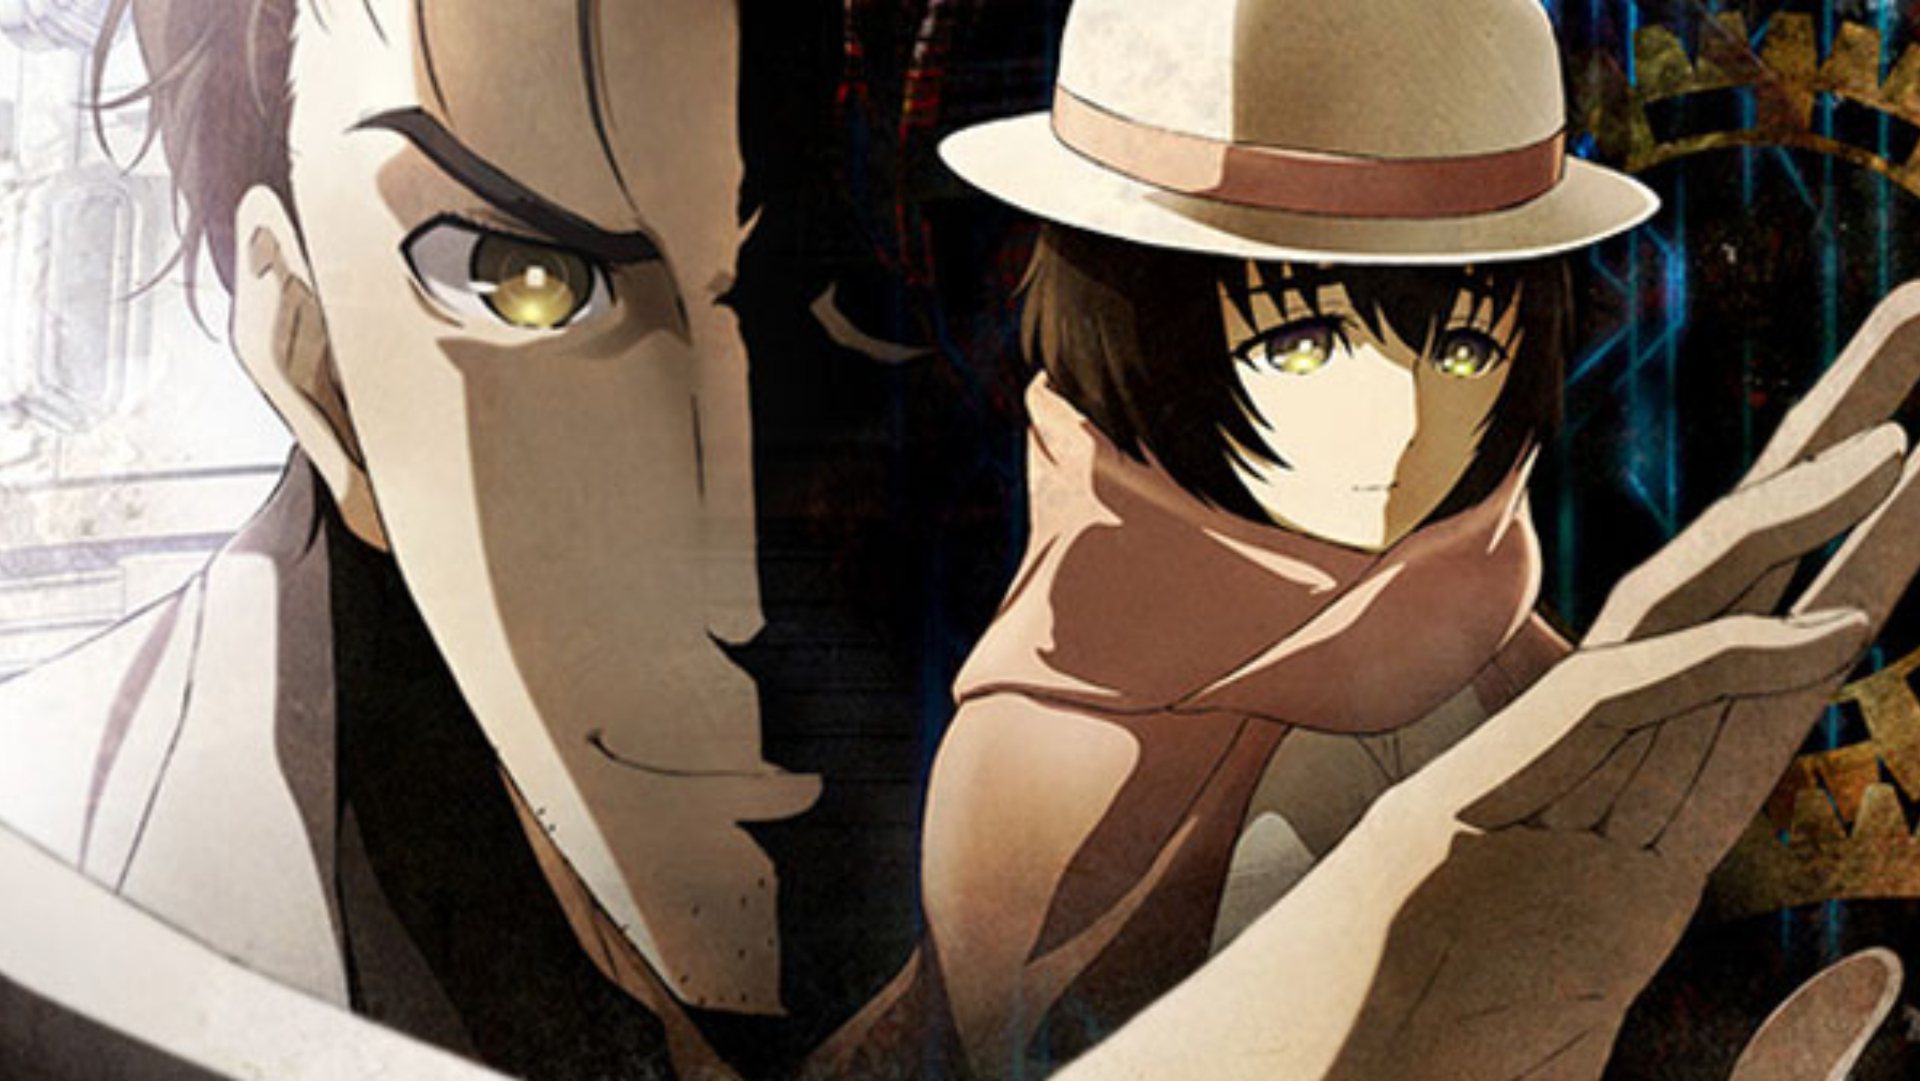 Arte chave de Steins;Gate 0 com Okabe aparecendo em segundo plano e Mayuri em primeiro plano.